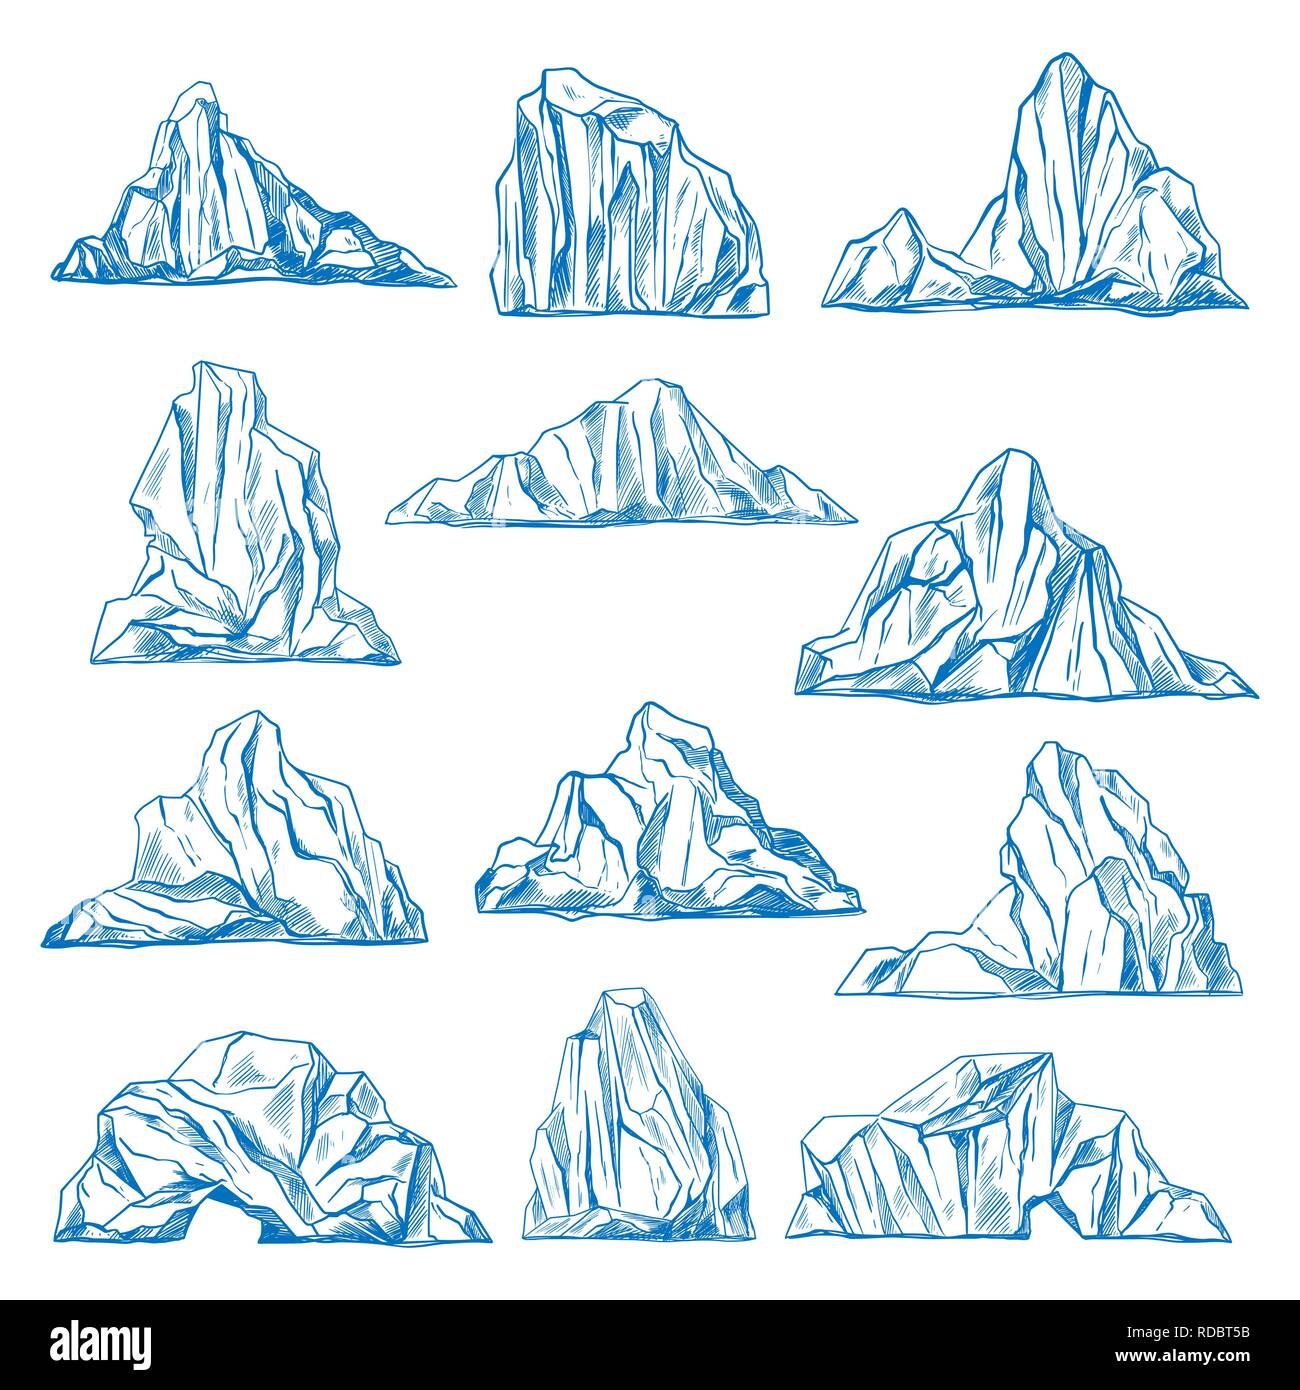 Eisberge Skizze oder Hand gezeichnet Berge. Stock Vektor